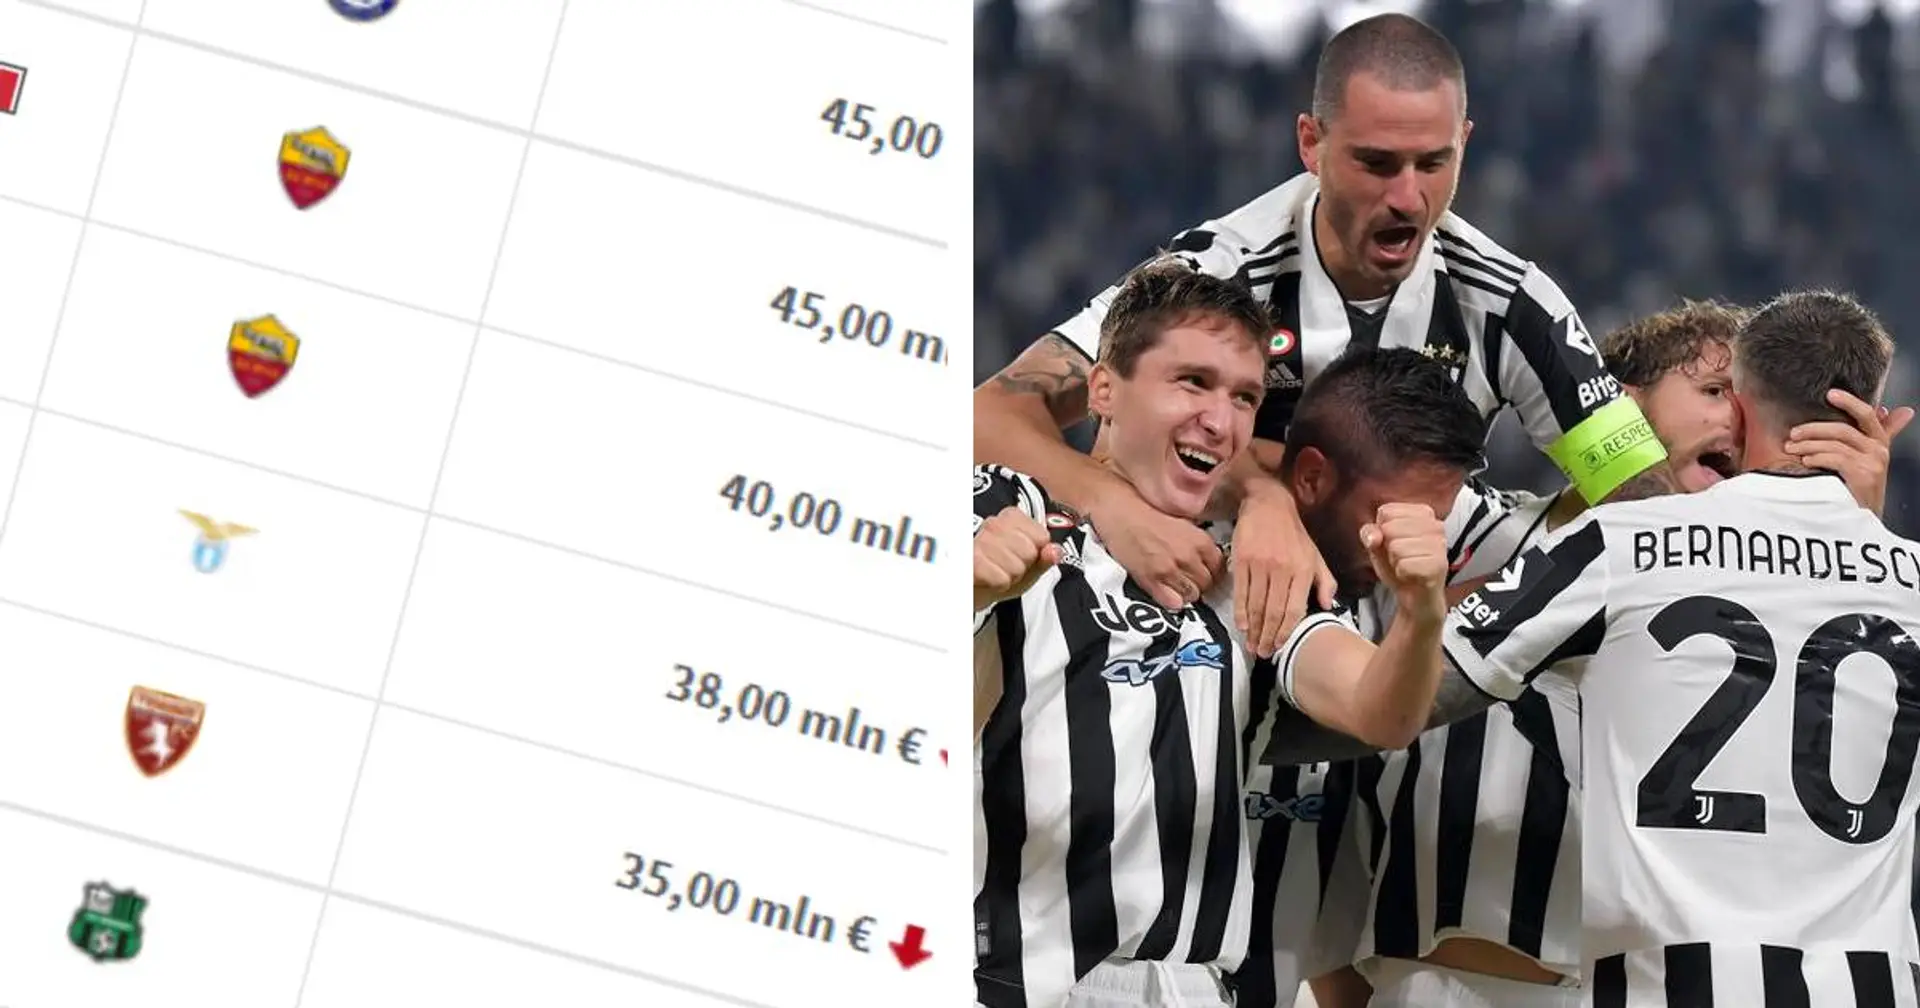 La classifica dei talenti italiani più preziosi al mondo: 1 solo giocatore della Juve in Top 10 